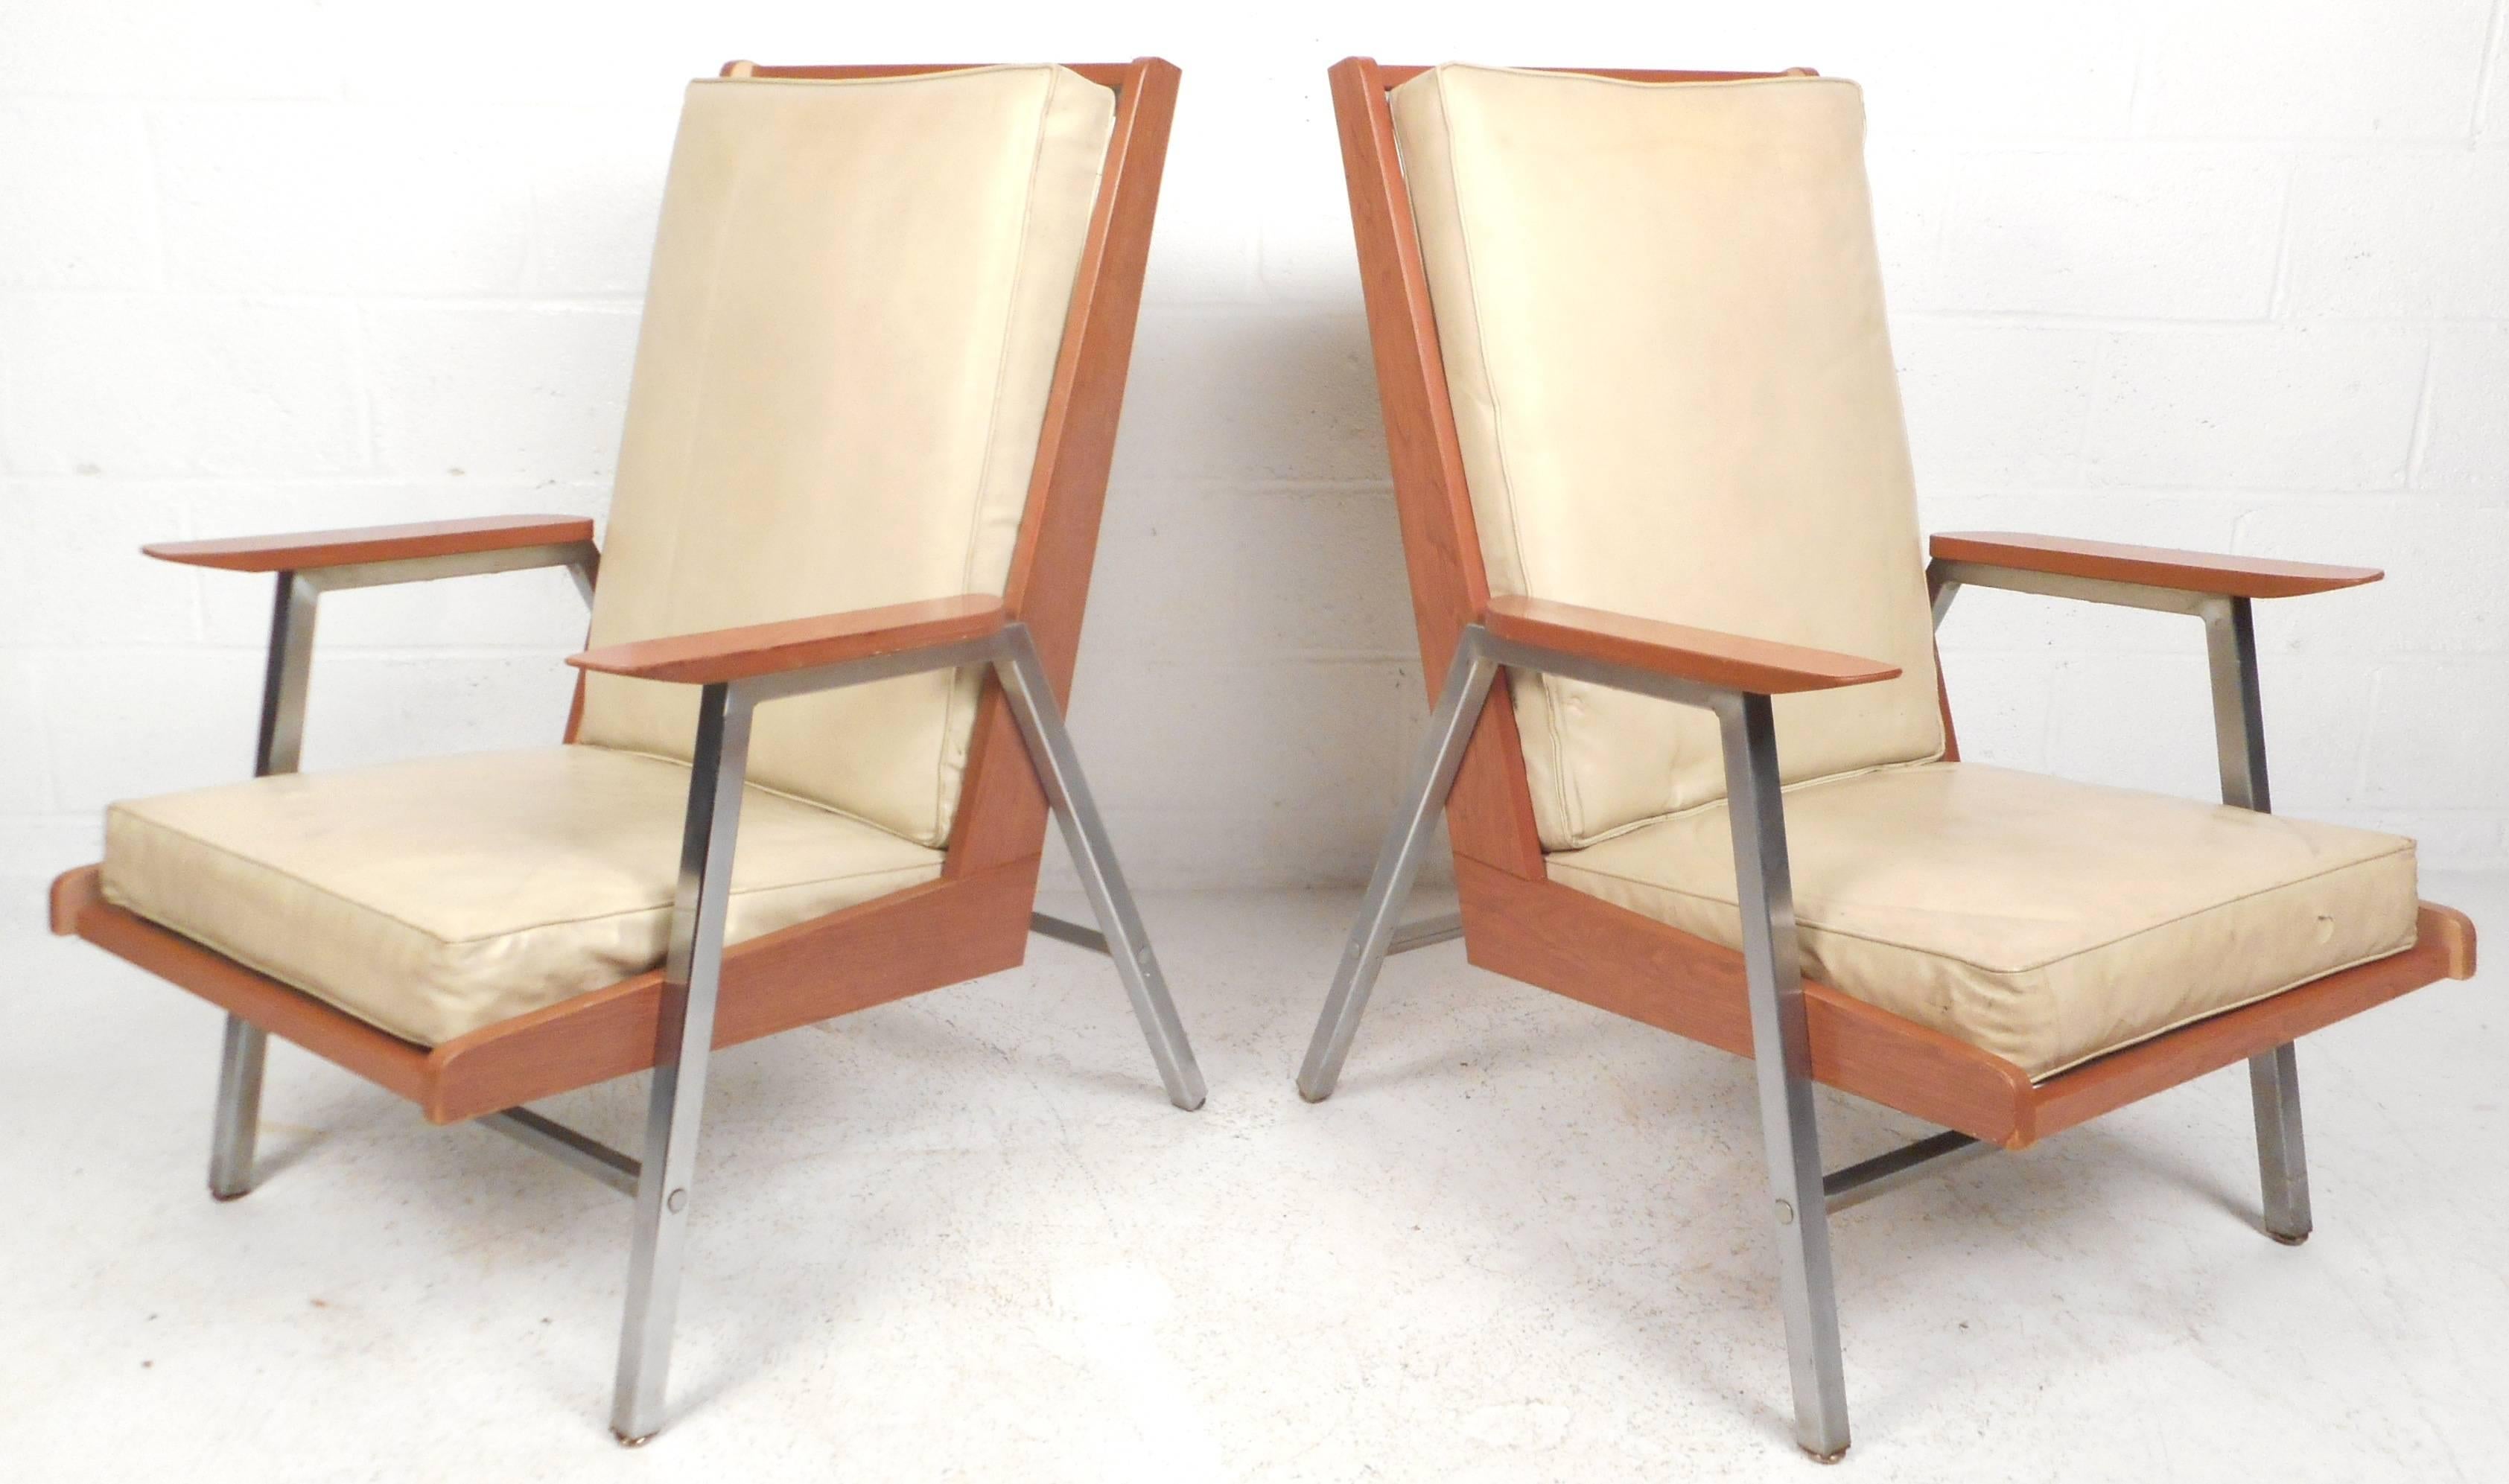 Cette élégante paire de chaises longues modernes et vintage présente un cadre bicolore avec du chrome lourd et du bois stratifié. Son design unique offre un grand confort grâce à son haut dossier, ses larges assises et ses épais coussins en vinyle